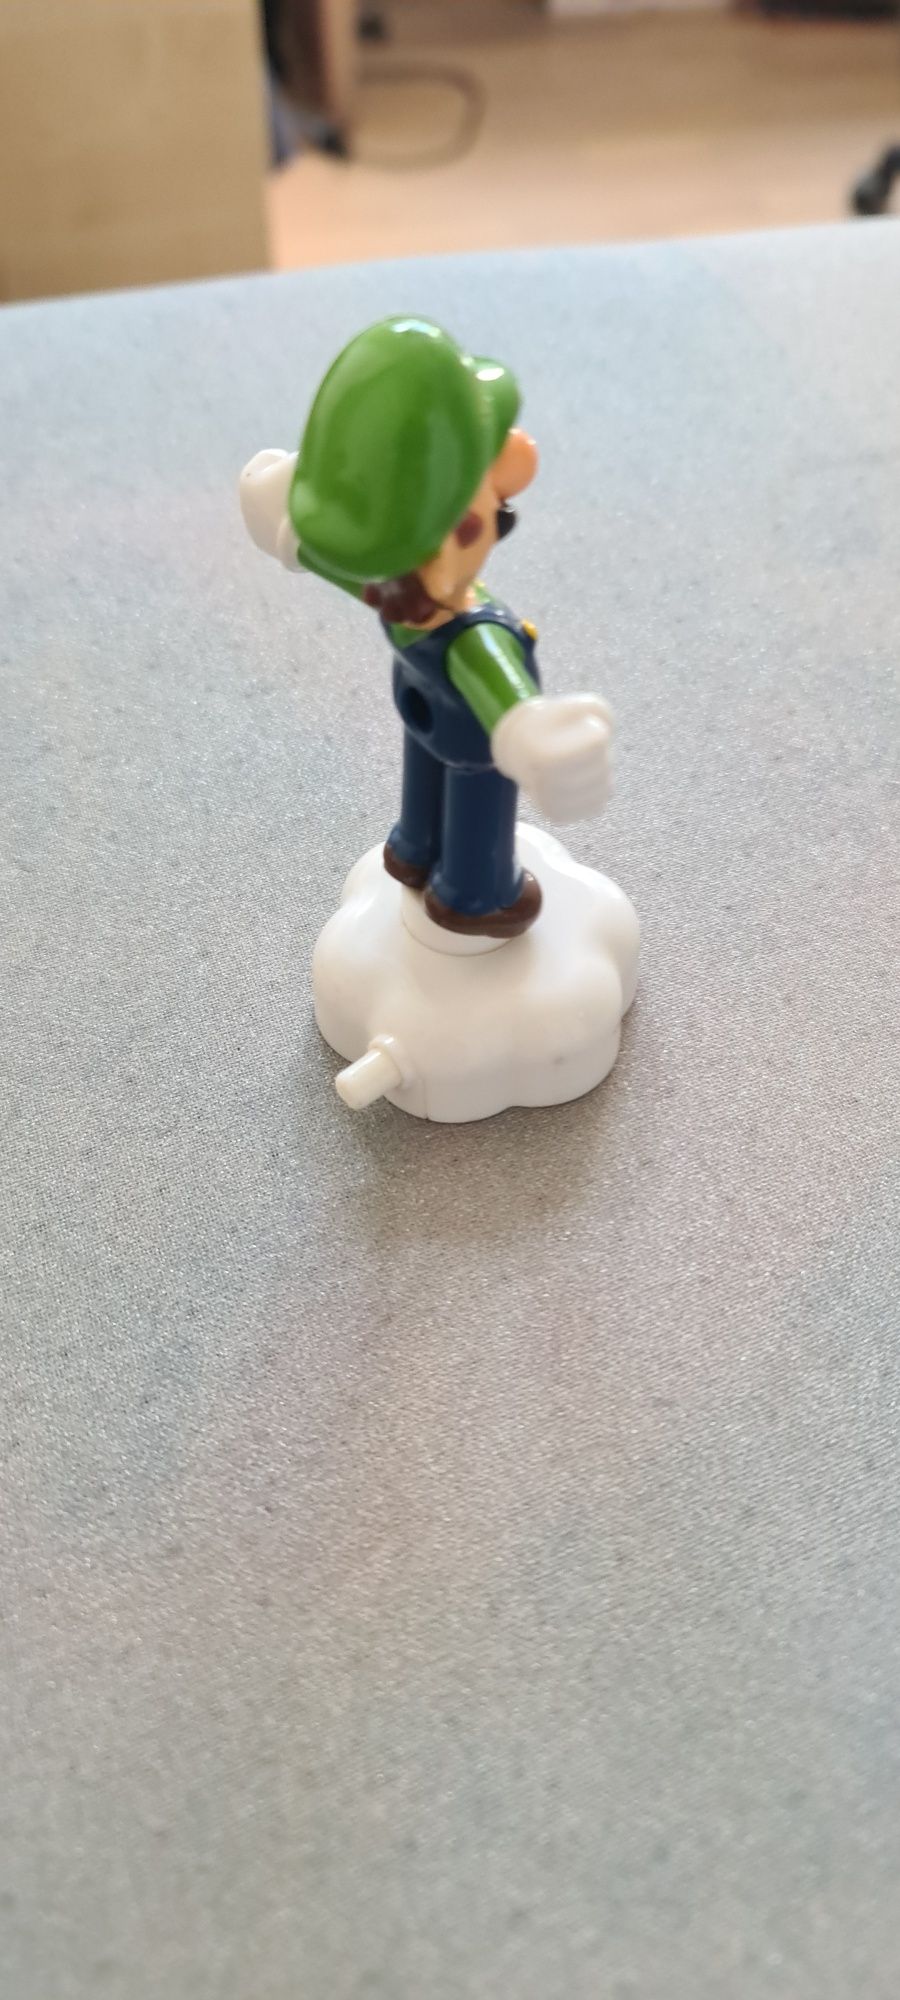 Luigi figurka happy meal